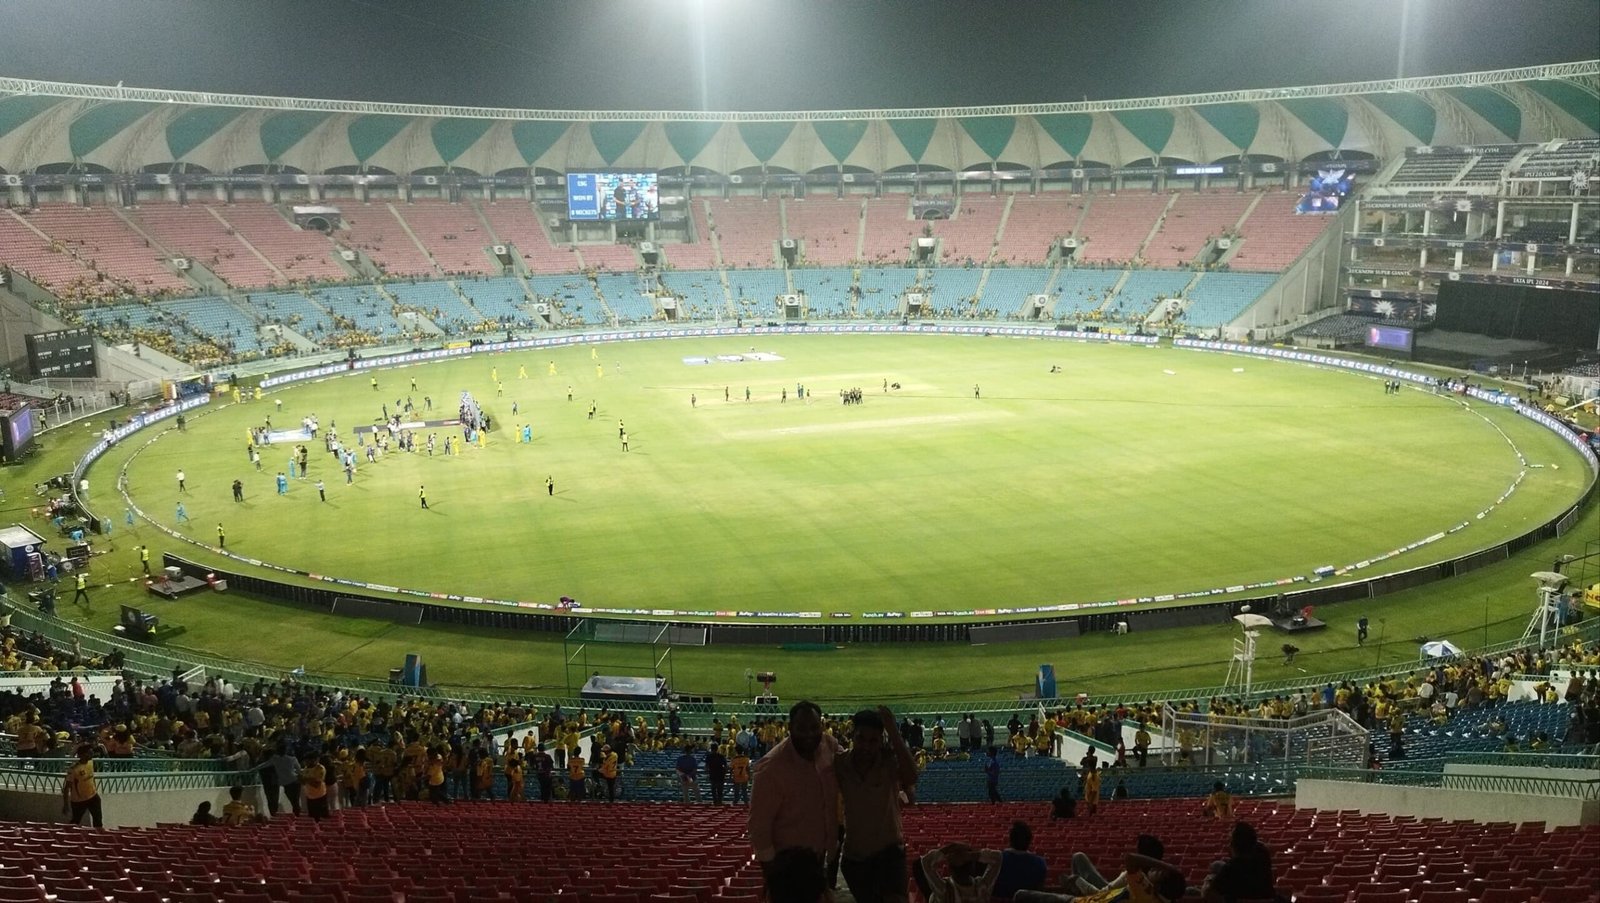 Ekana cricket stadium in Lucknow